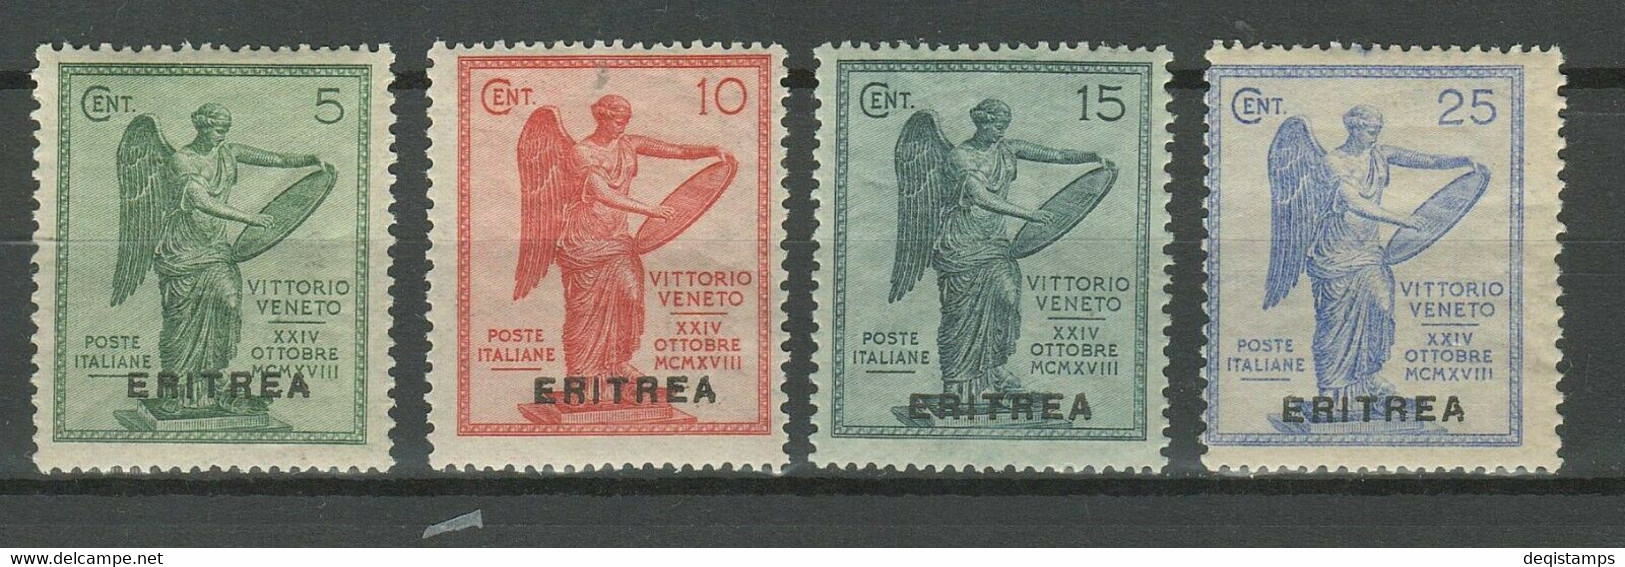 Taly 1922 Eritrea ☀ Early Victory Issue, Full Set ☀ MH* - Eritrea